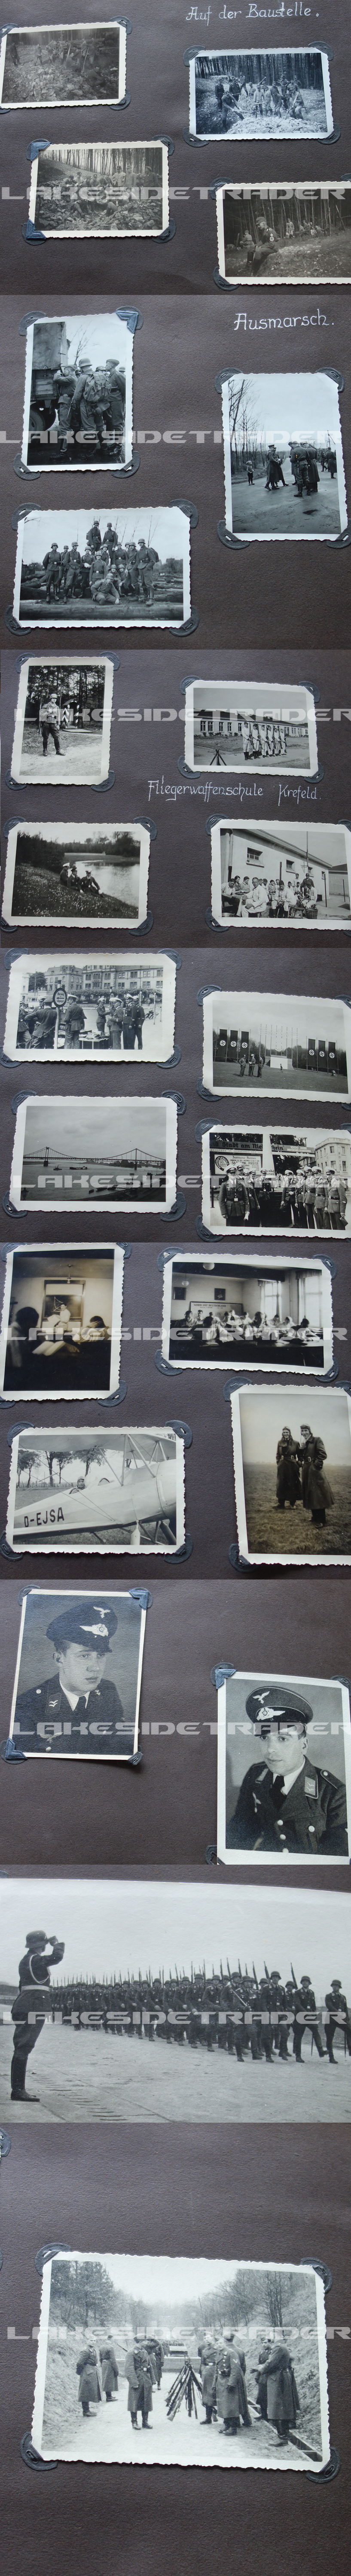 Luftwaffe Photo Album